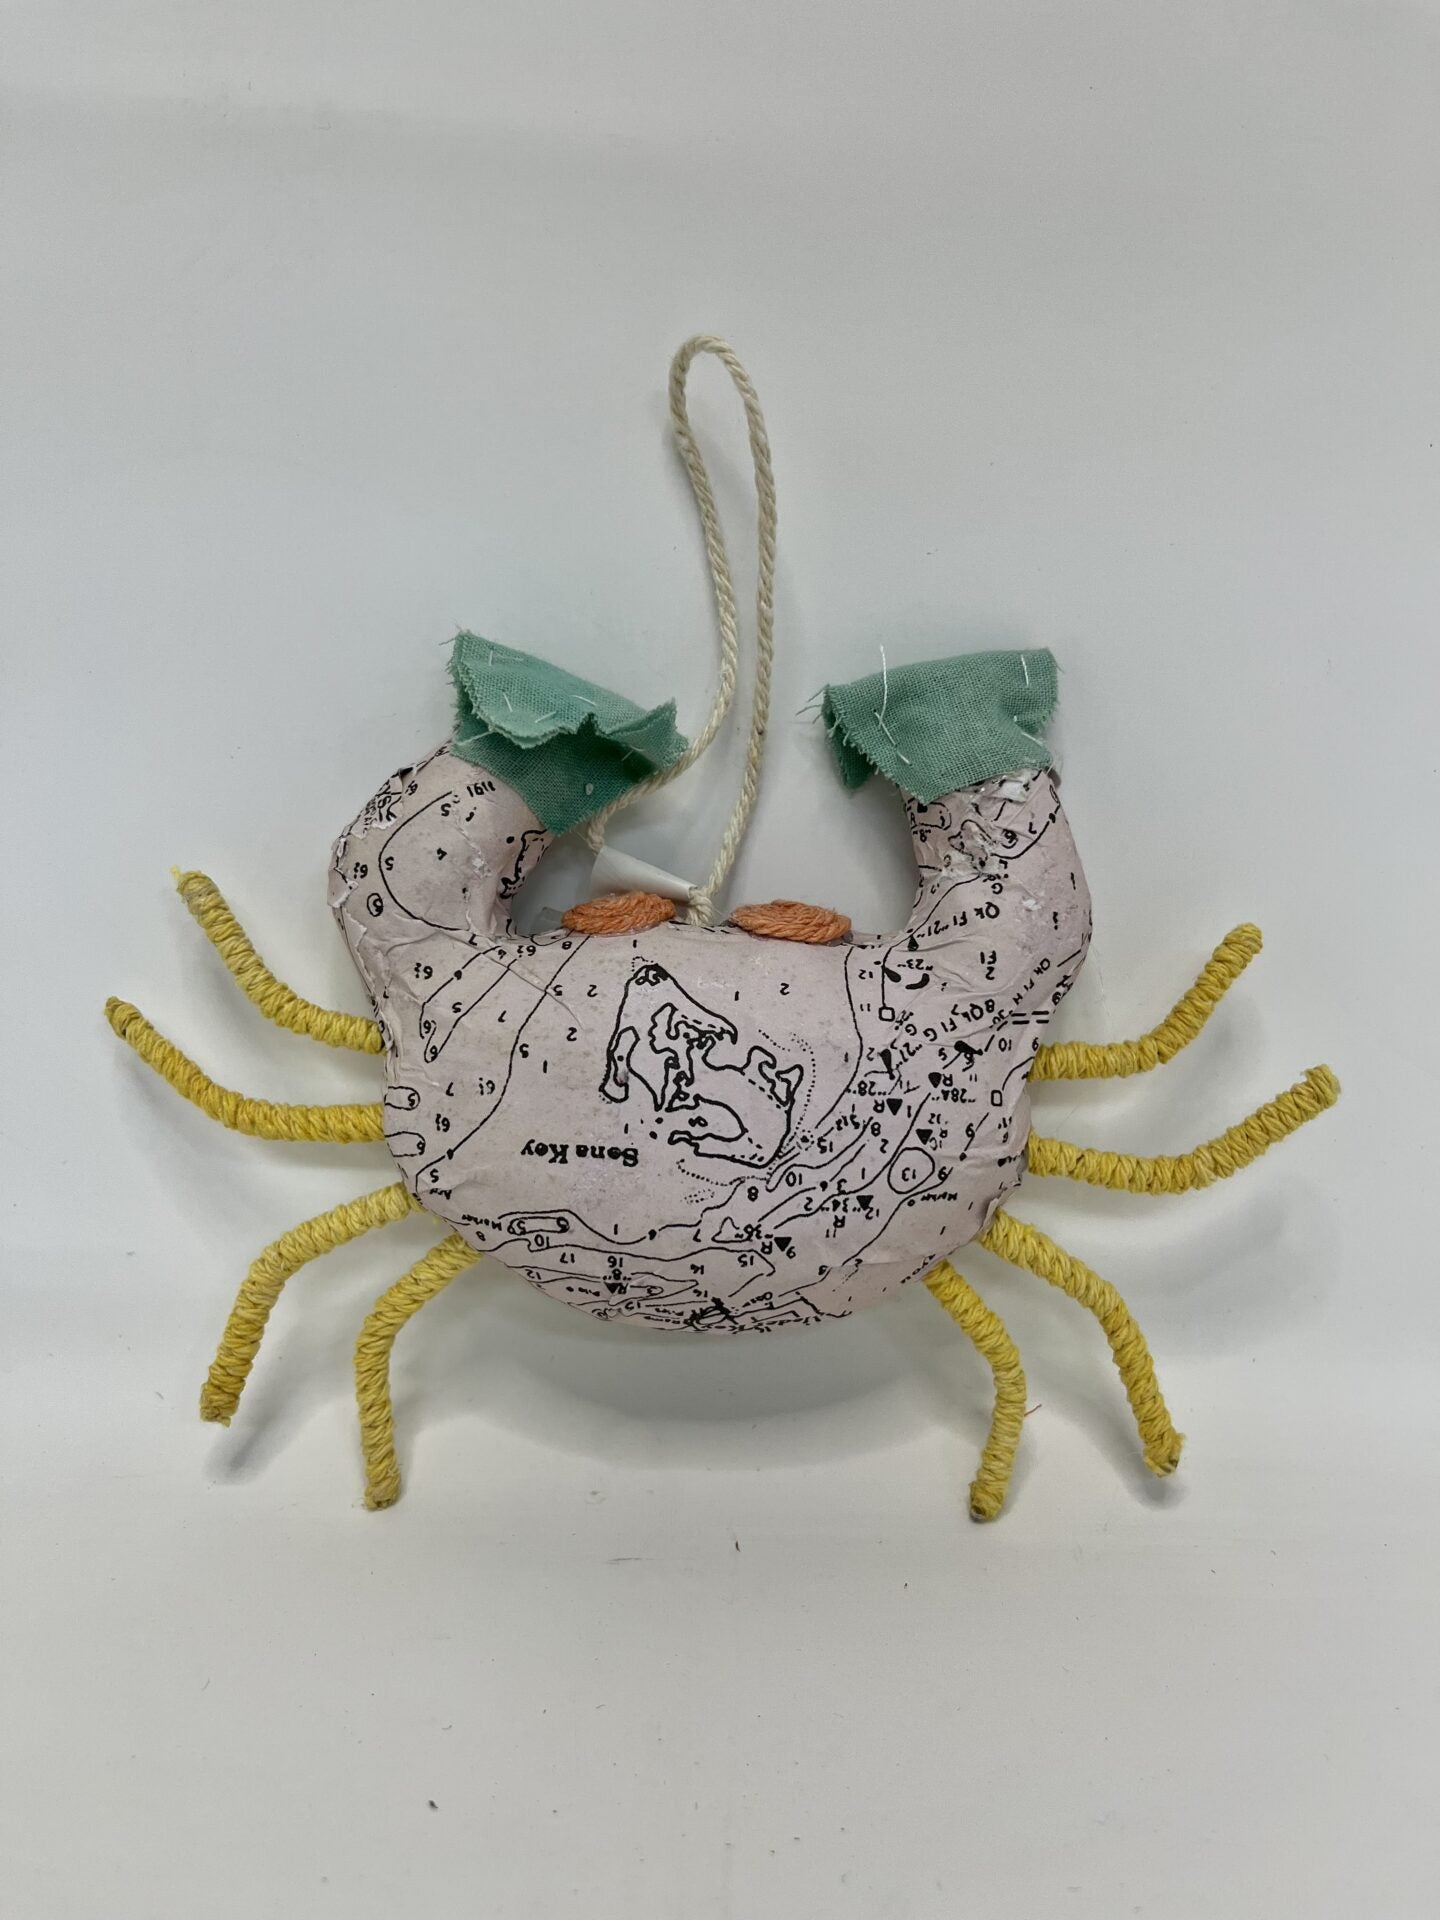 Paper Mache Crab Ornament